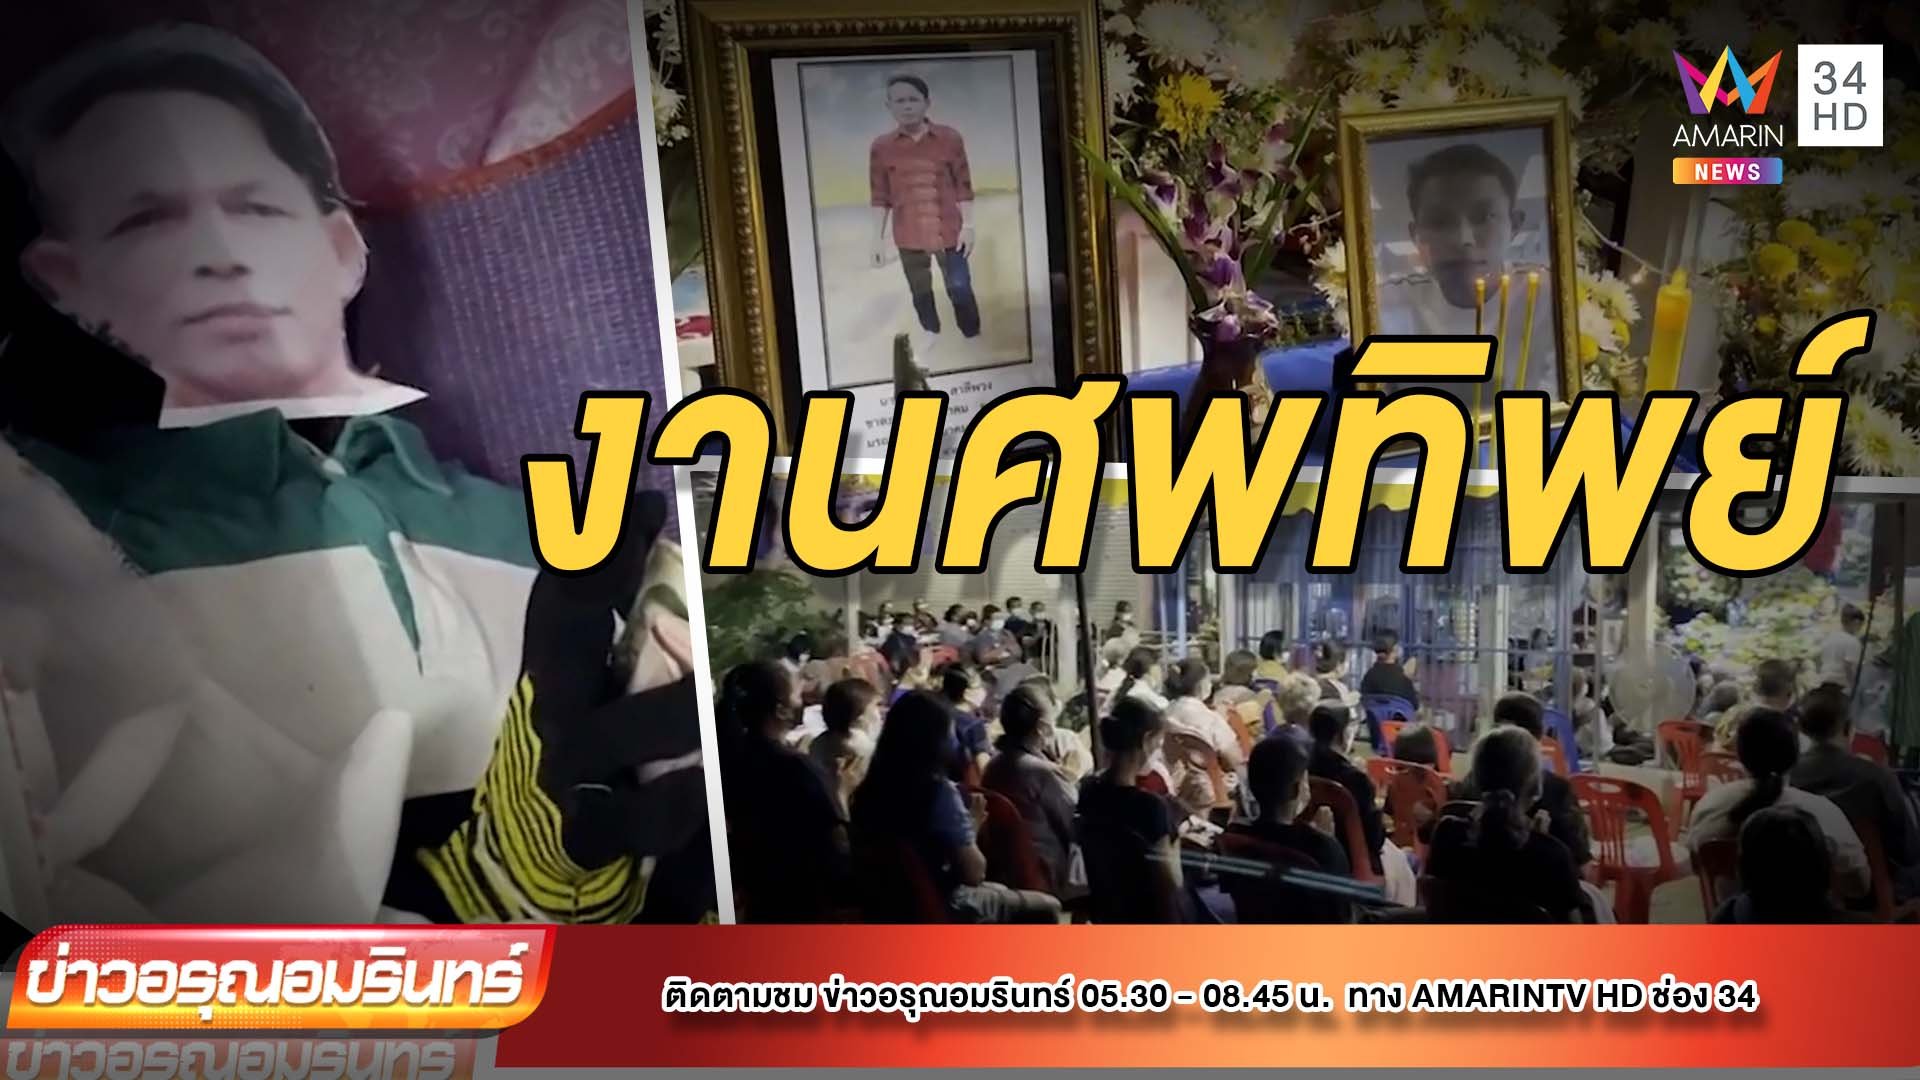 ตะลึง! หนุ่มไทยเสียชีวิตที่ไต้หวัน ญาติจัดงานศพเผาหุ่นแทน  | ข่าวอรุณอมรินทร์ | 30 มี.ค. 65 | AMARIN TVHD34